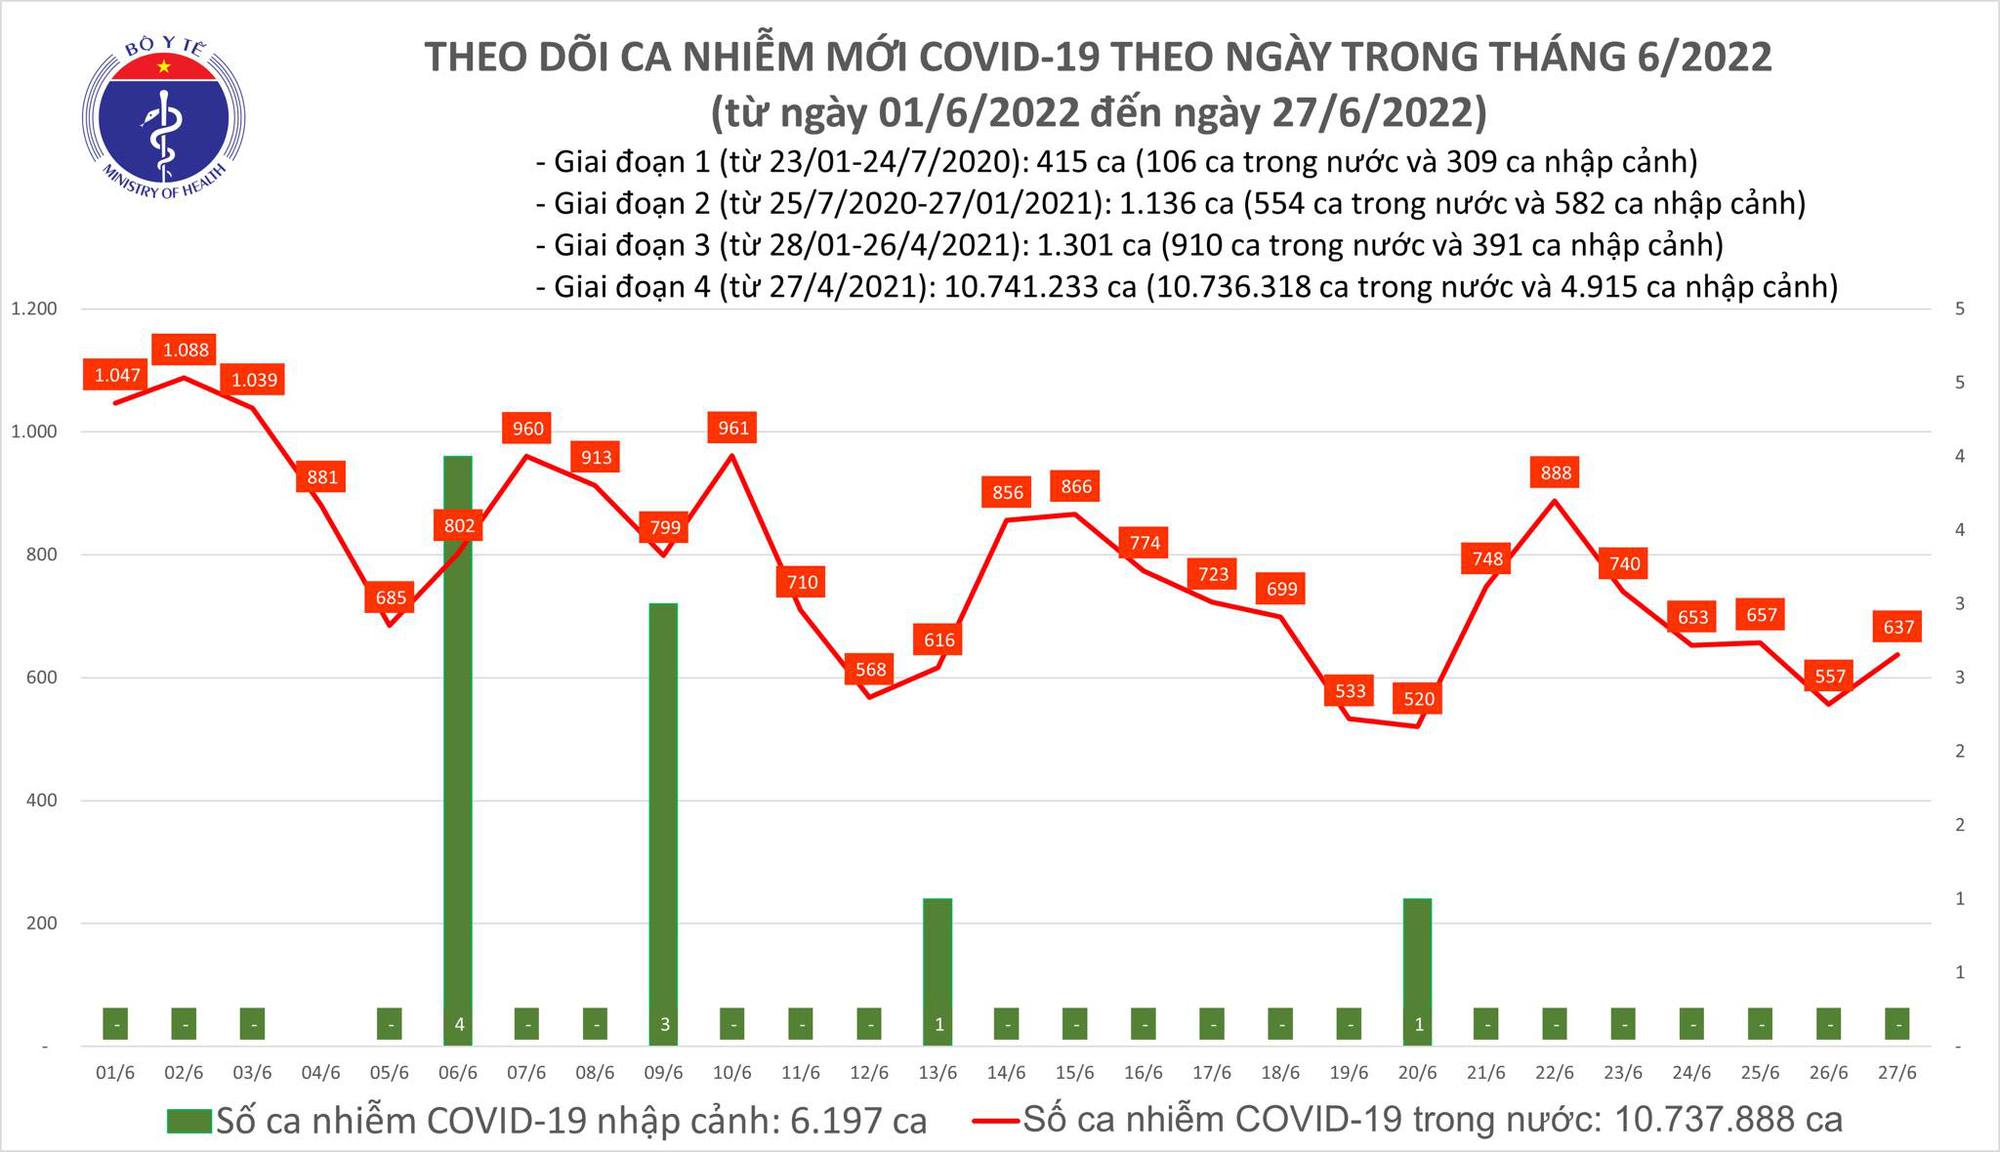 Ngày 27/6: Ca COVID-19 tăng lên, có 637 F0; Bệnh nhân nặng thấp nhất trong 12 tháng - Ảnh 1.